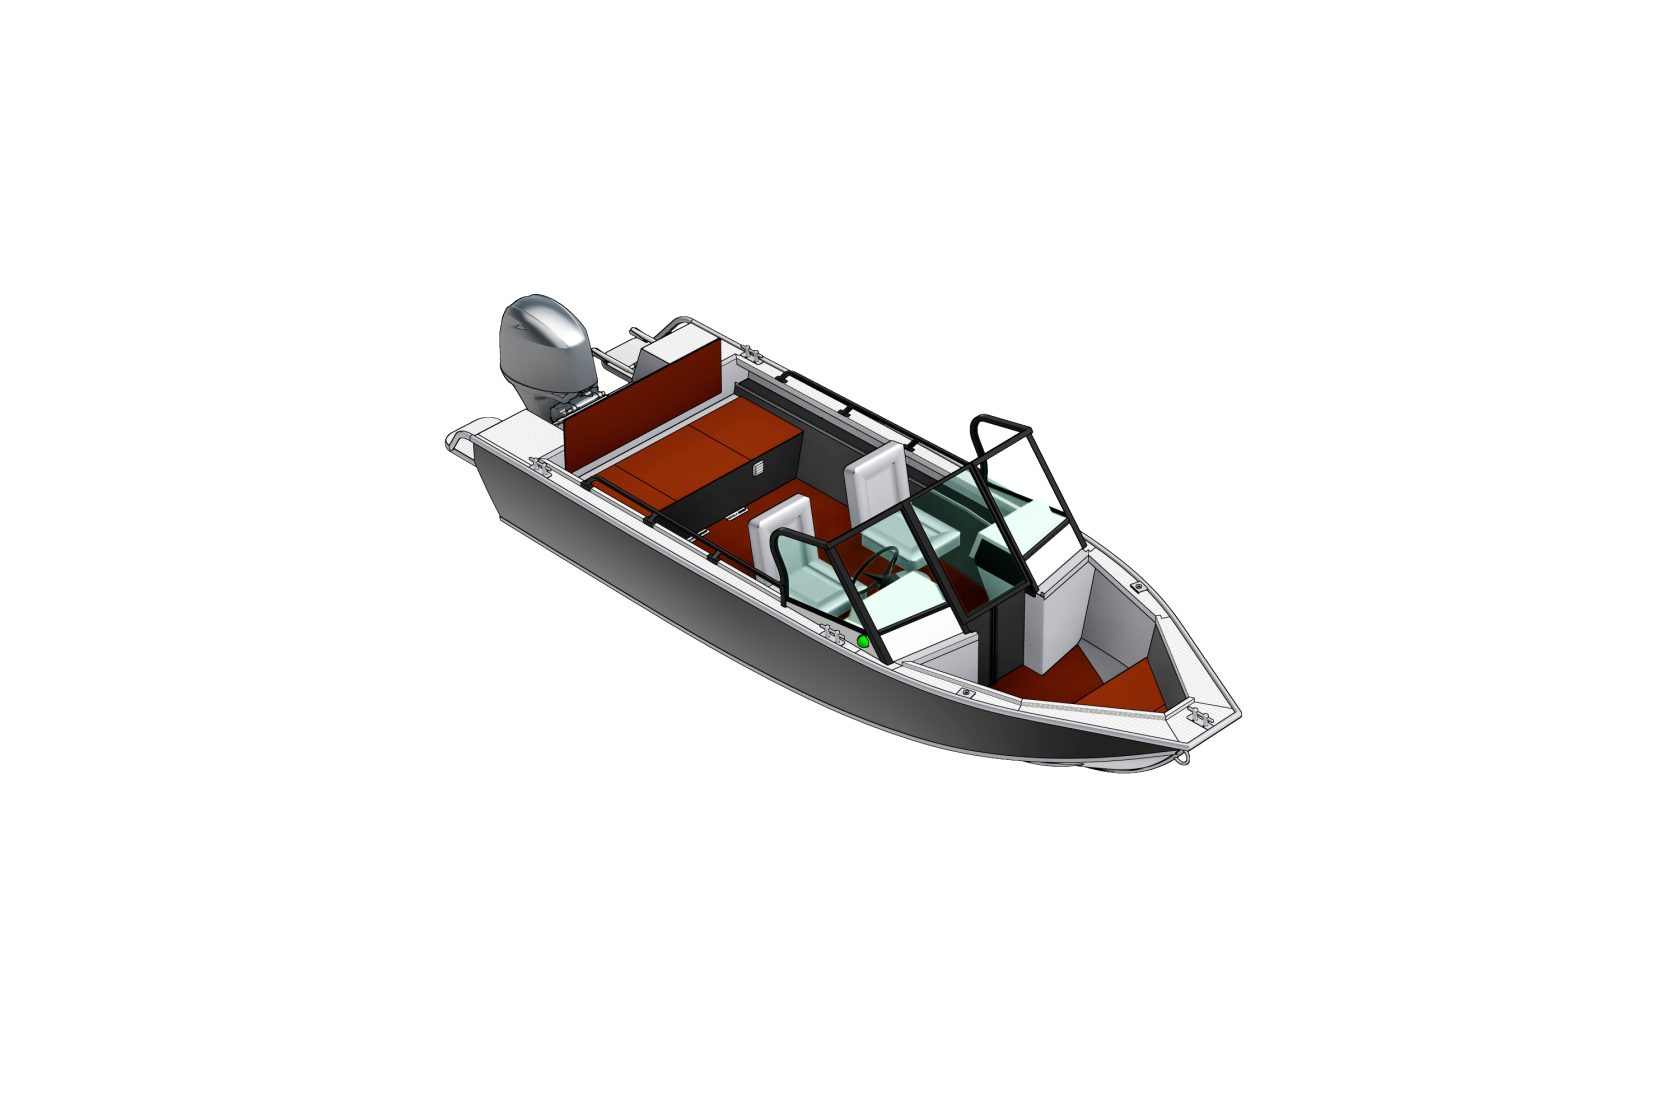 Шлюпка слова. Катер REALCRAFT 600 Cabin. Лодка Реалкрафт 600 кабин. Моторная лодка REALCRAFT 700 Cabin. REALCRAFT Boats logo.